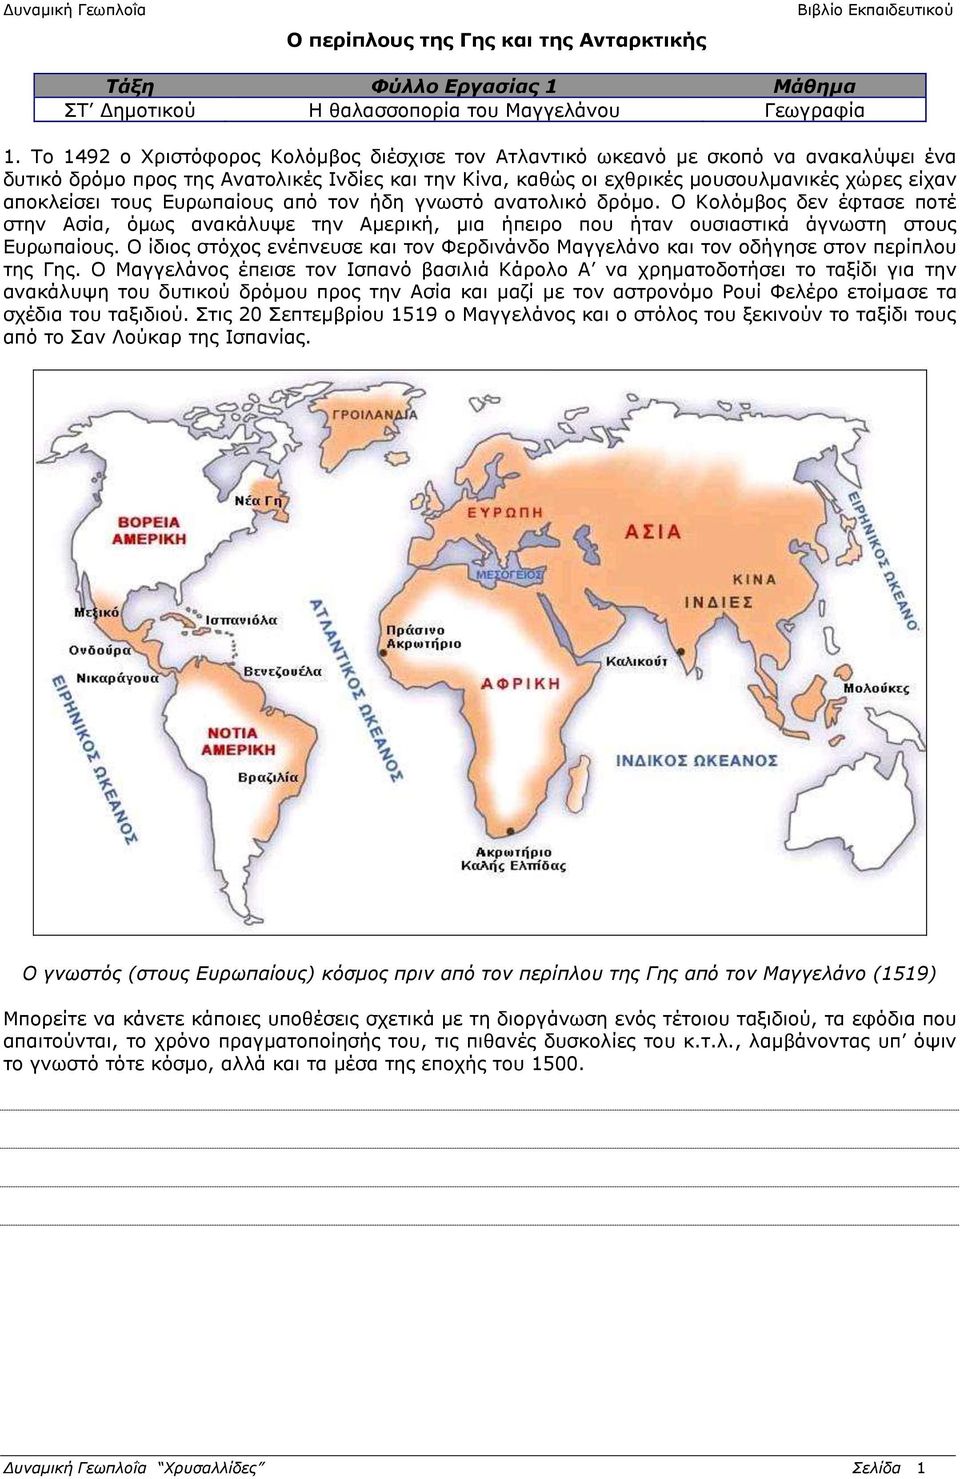 τους Ευρωπαίους από τον ήδη γνωστό ανατολικό δρόμο. Ο Κολόμβος δεν έφτασε ποτέ στην Ασία, όμως ανακάλυψε την Αμερική, μια ήπειρο που ήταν ουσιαστικά άγνωστη στους Ευρωπαίους.